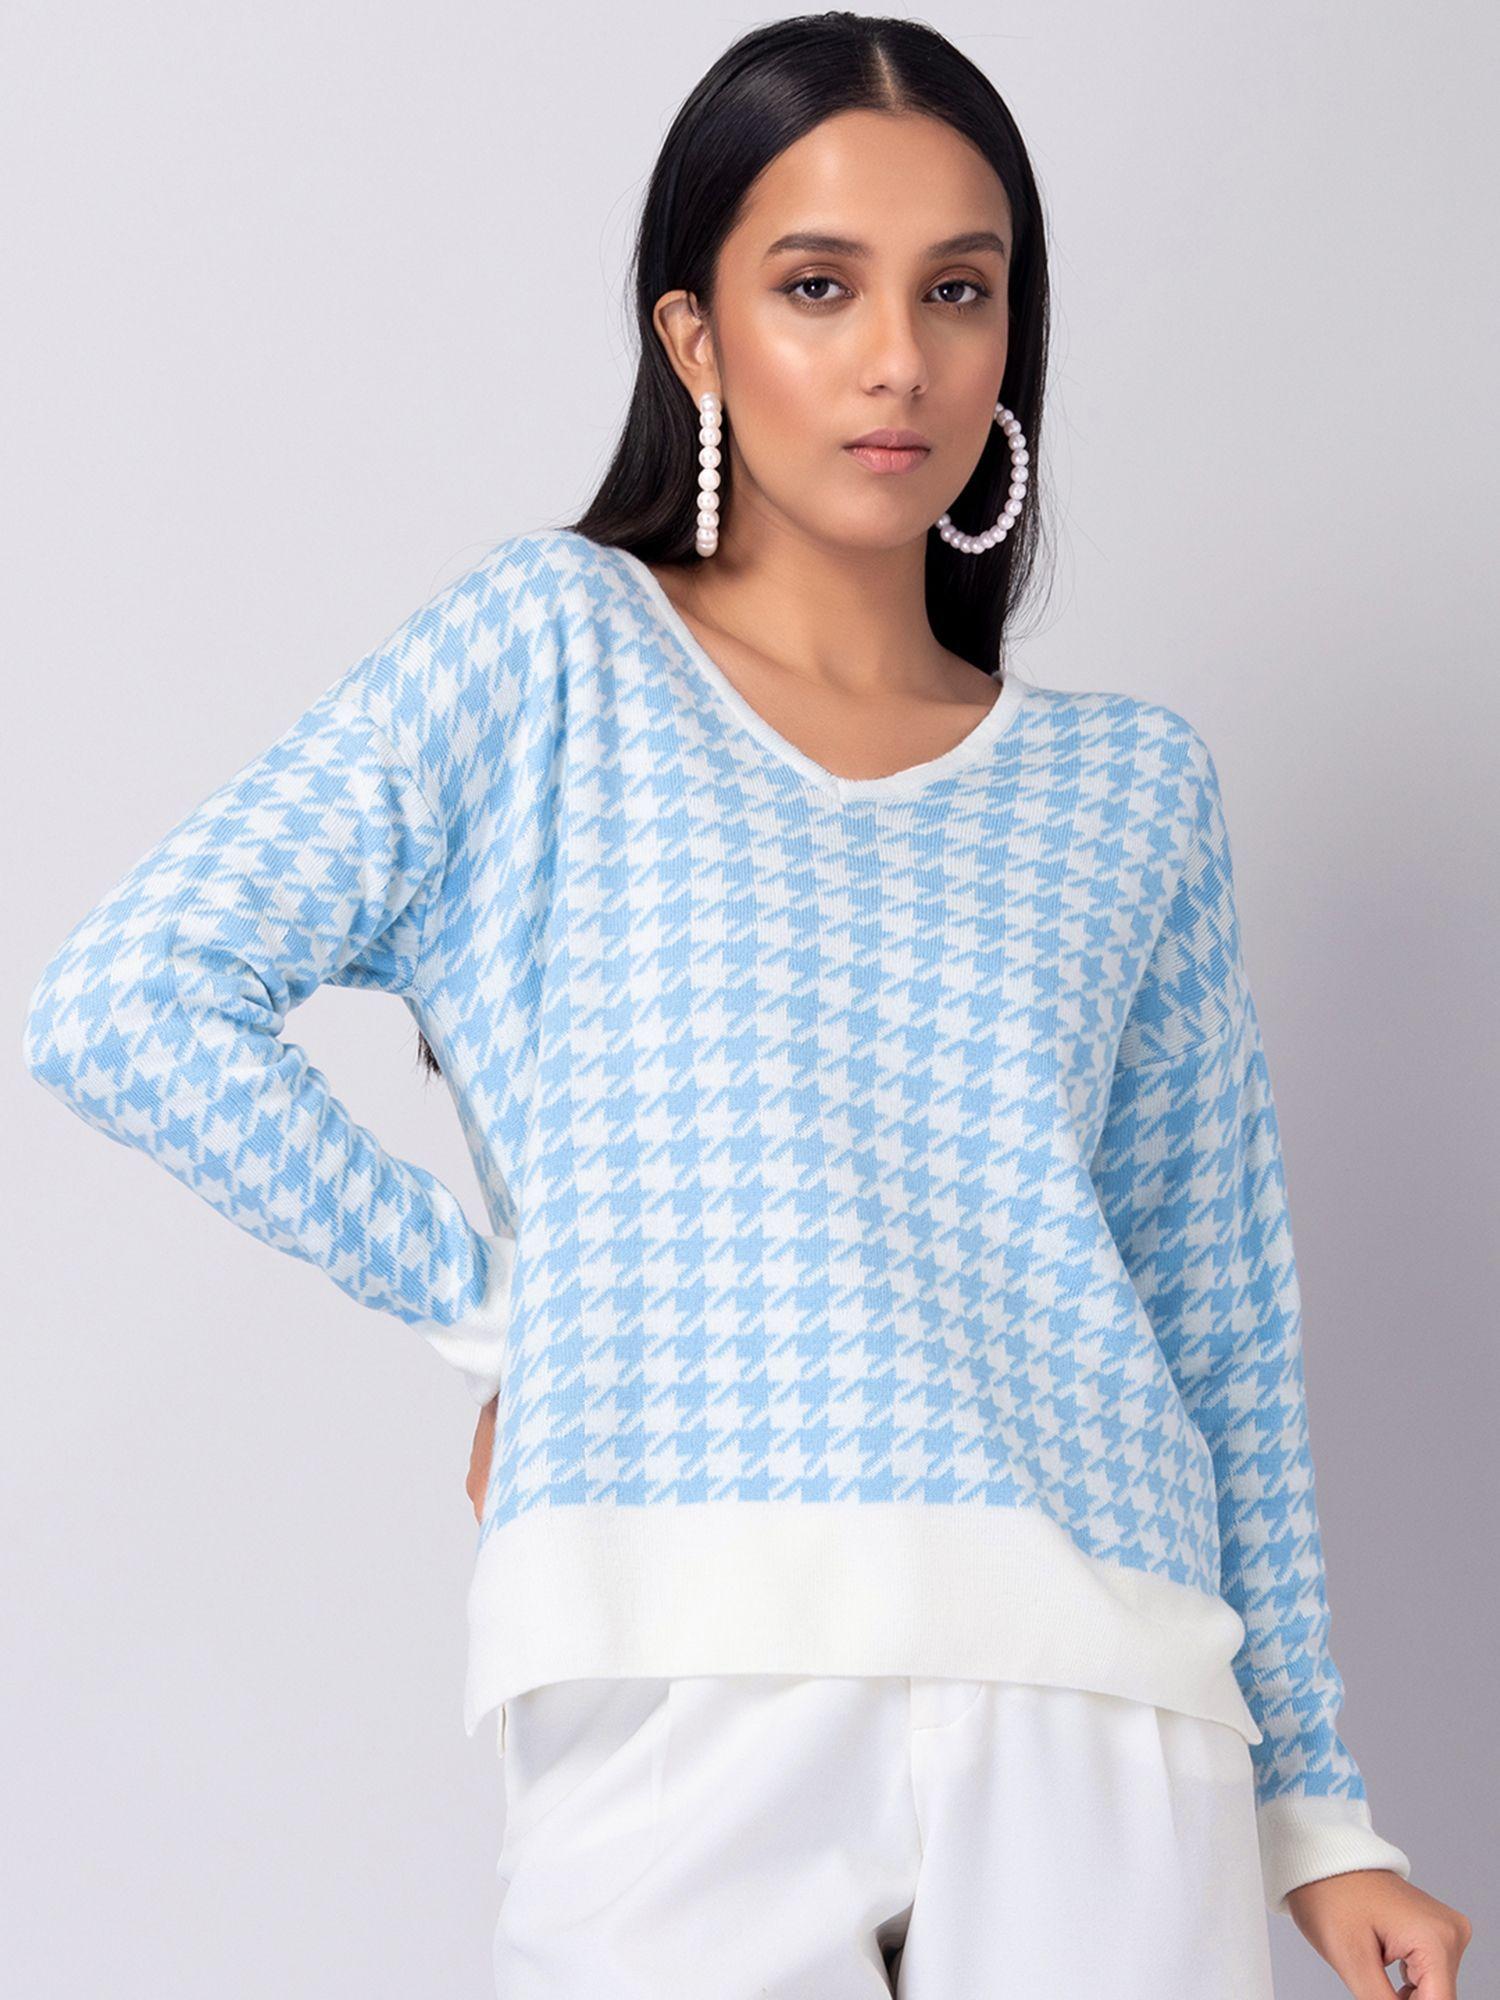 blue-and-white-herringbone-jumper-sweater